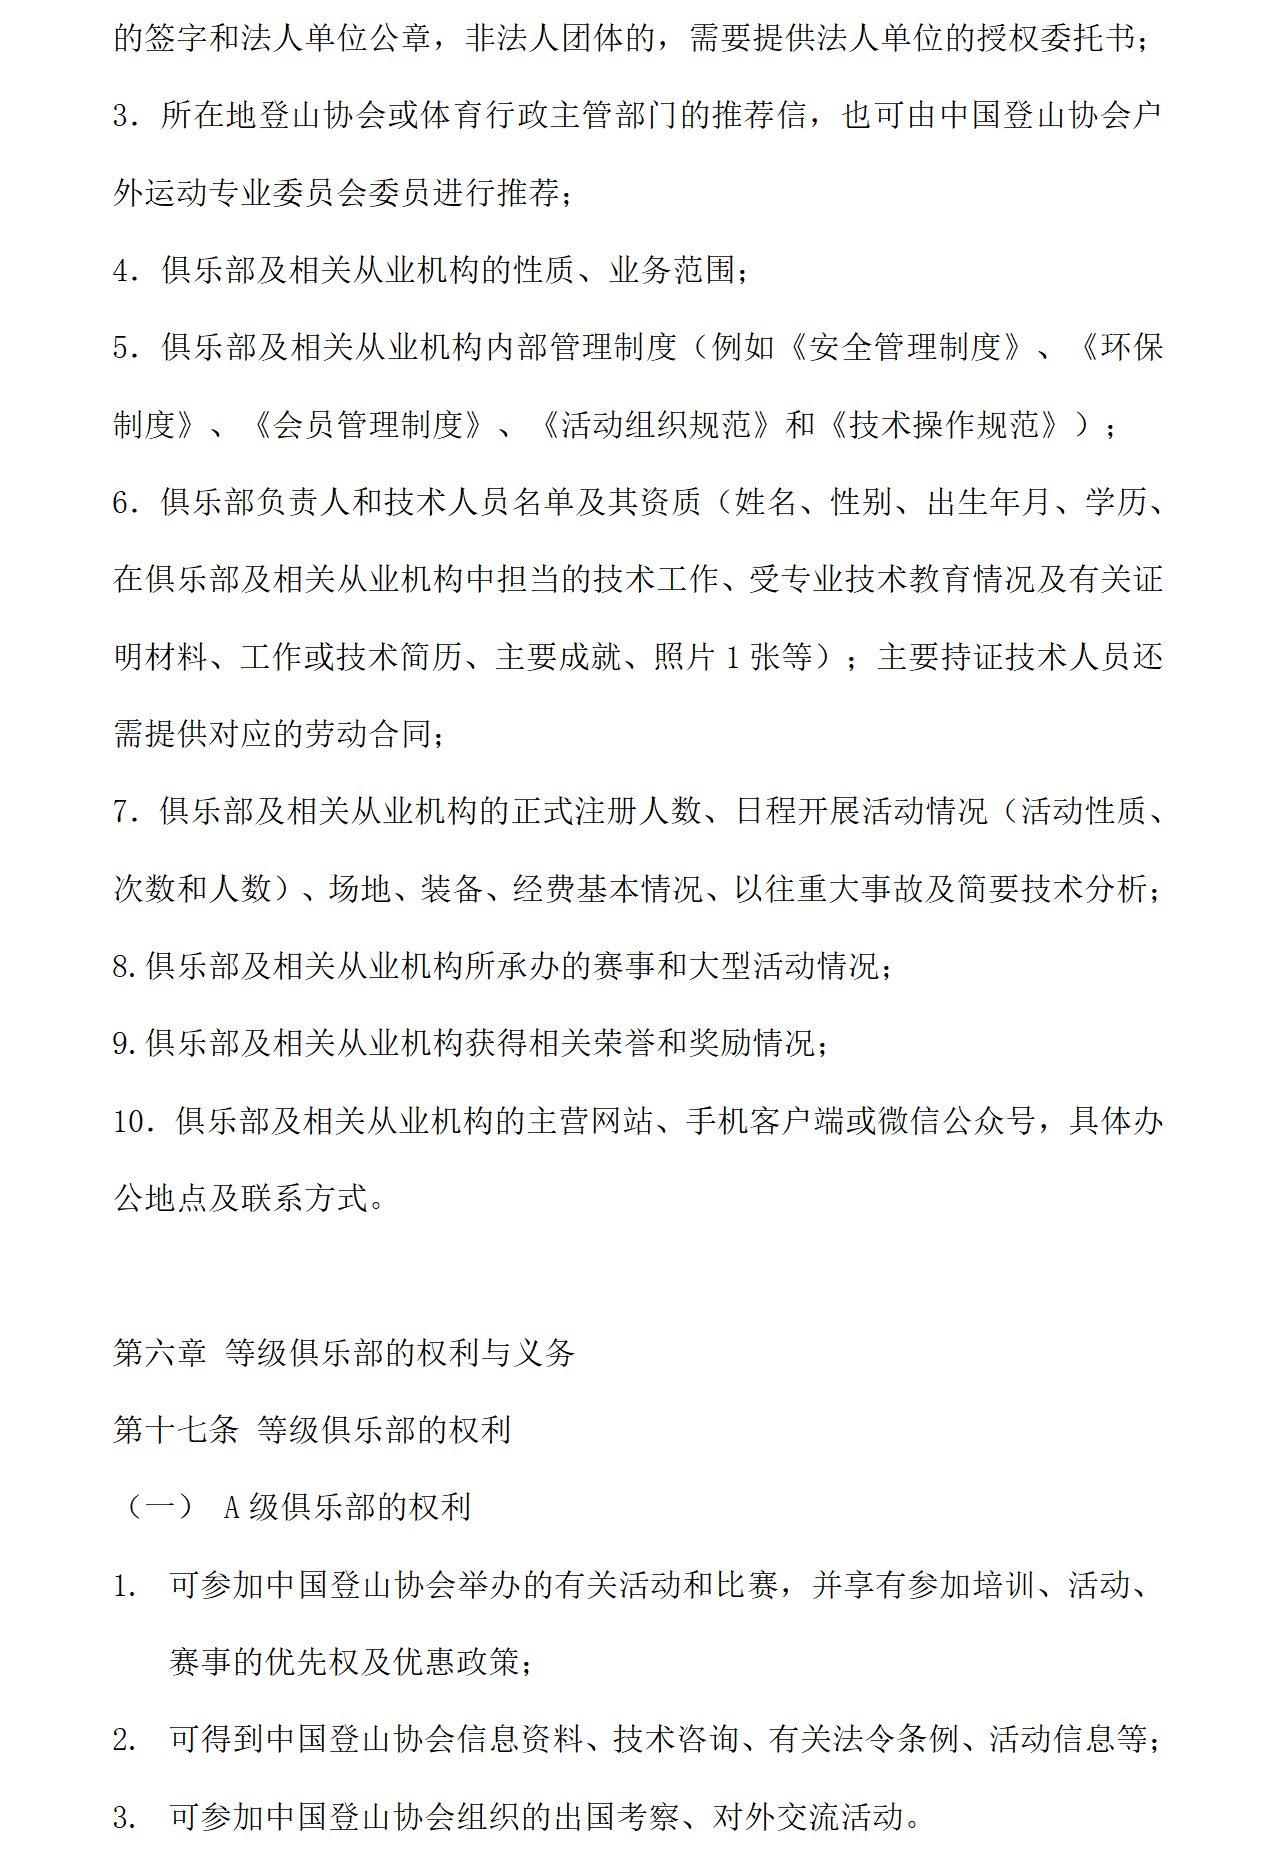 中国登山协会登山户外运动俱乐部管理办法_07.png